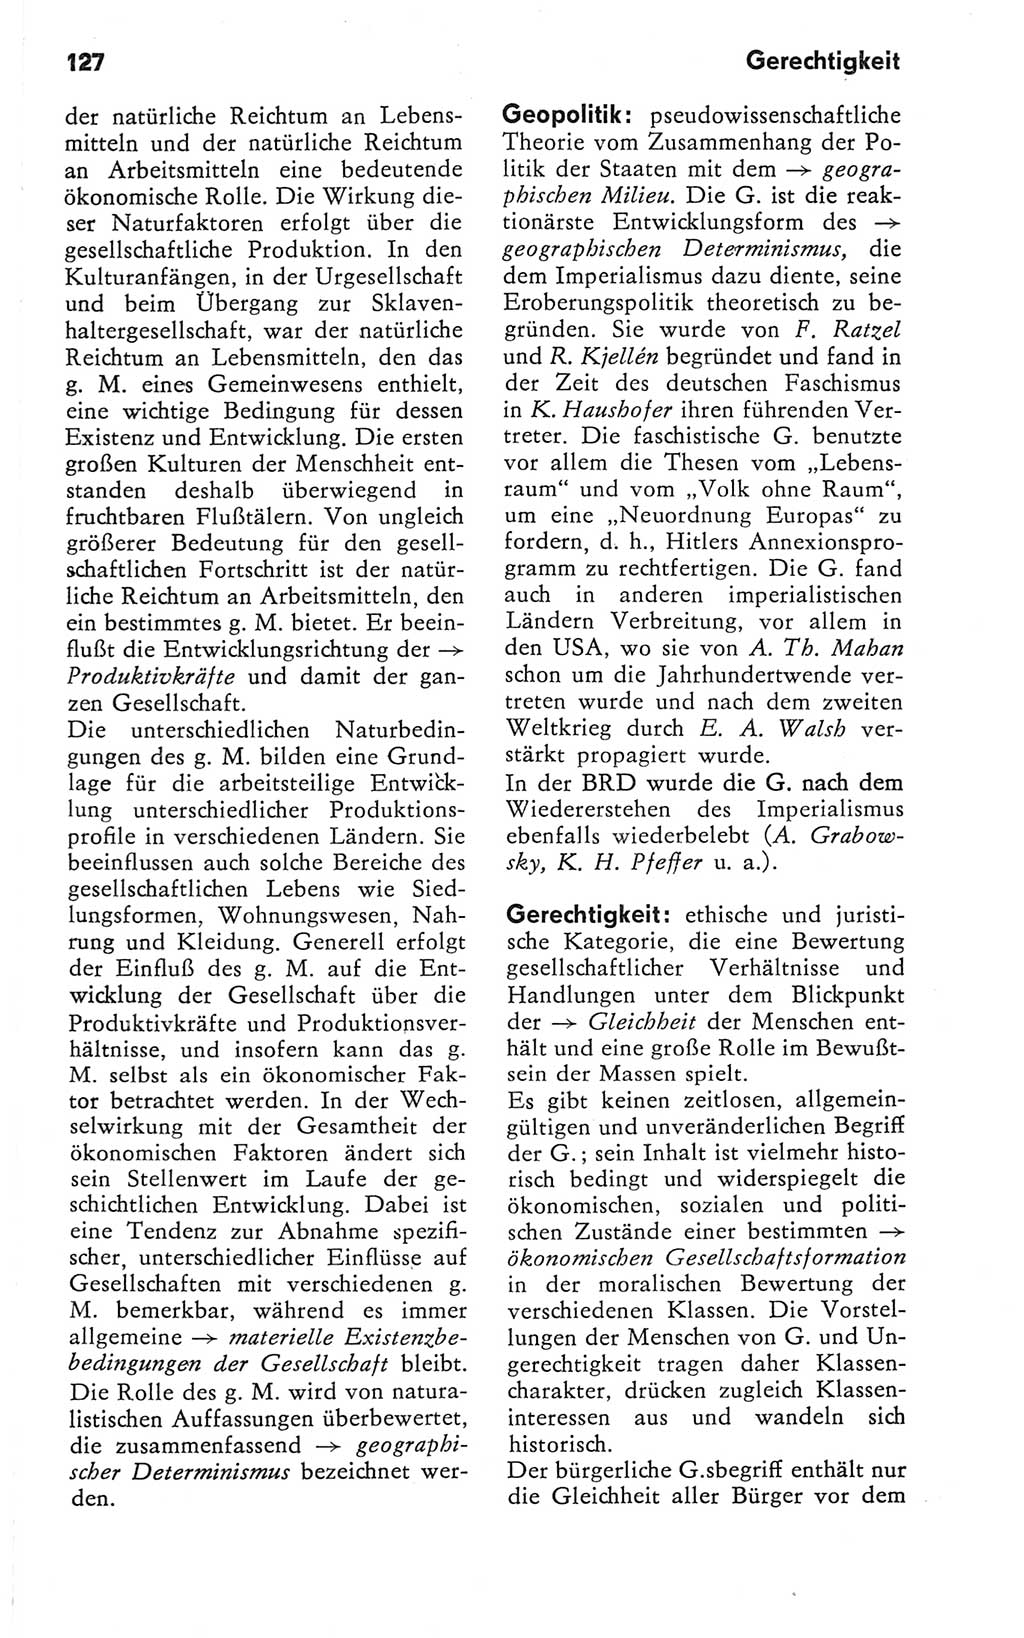 Kleines Wörterbuch der marxistisch-leninistischen Philosophie [Deutsche Demokratische Republik (DDR)] 1981, Seite 127 (Kl. Wb. ML Phil. DDR 1981, S. 127)